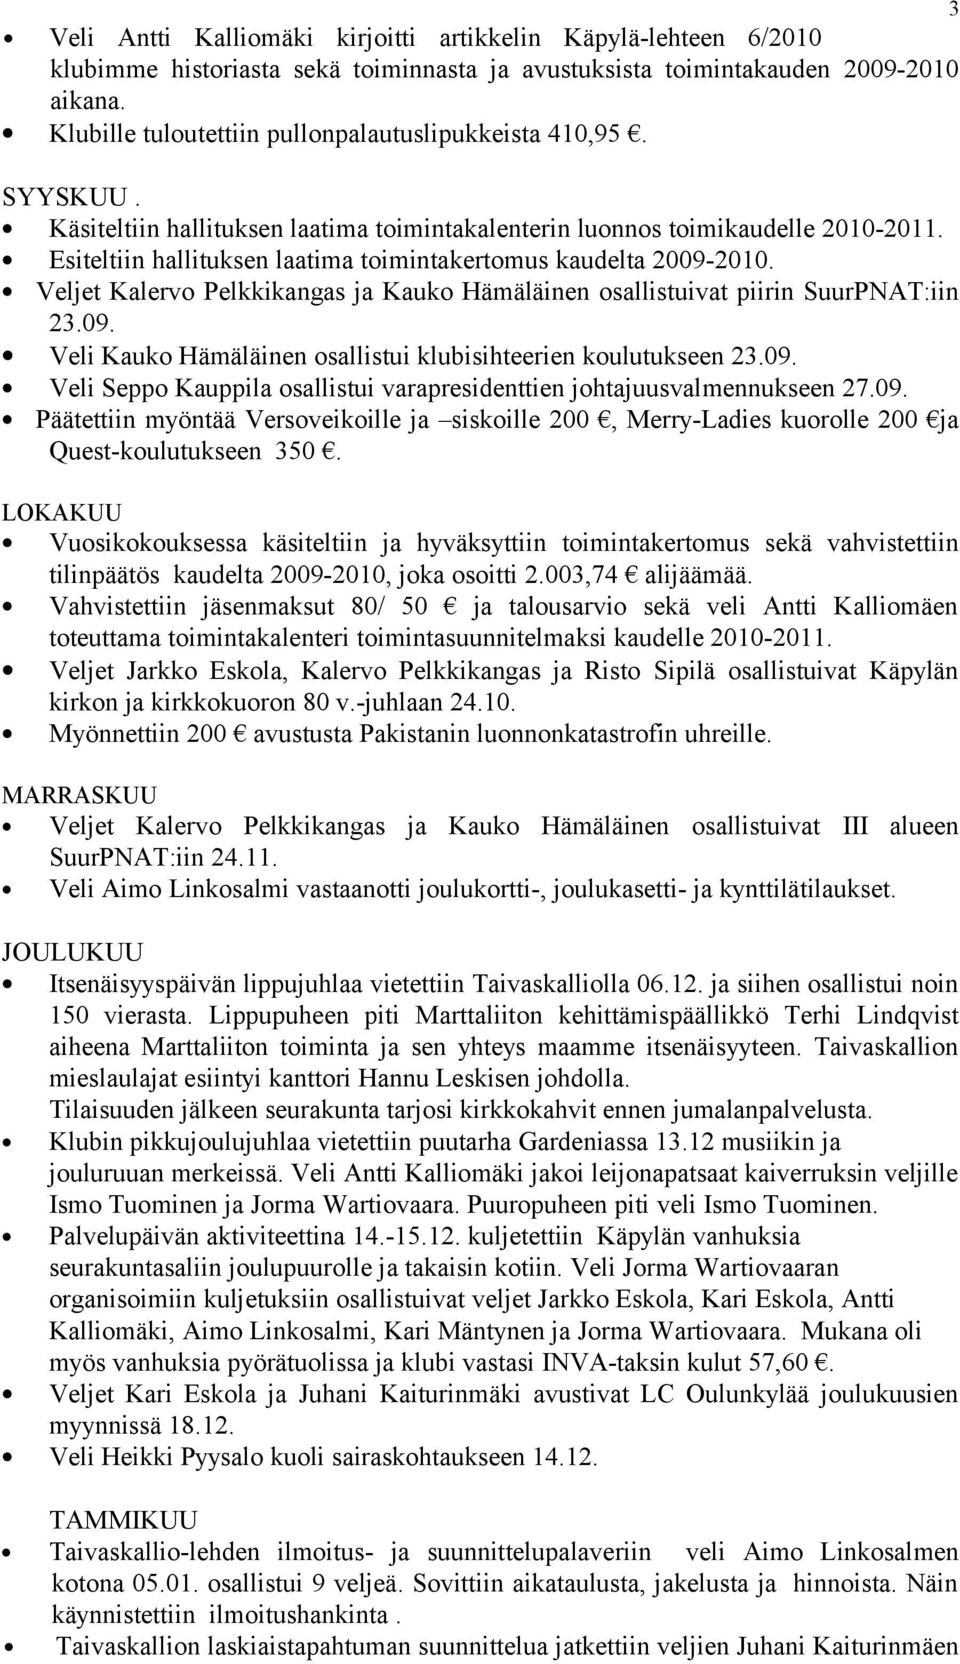 Esiteltiin hallituksen laatima toimintakertomus kaudelta 2009-2010. Veljet Kalervo Pelkkikangas ja Kauko Hämäläinen osallistuivat piirin SuurPNAT:iin 23.09. Veli Kauko Hämäläinen osallistui klubisihteerien koulutukseen 23.